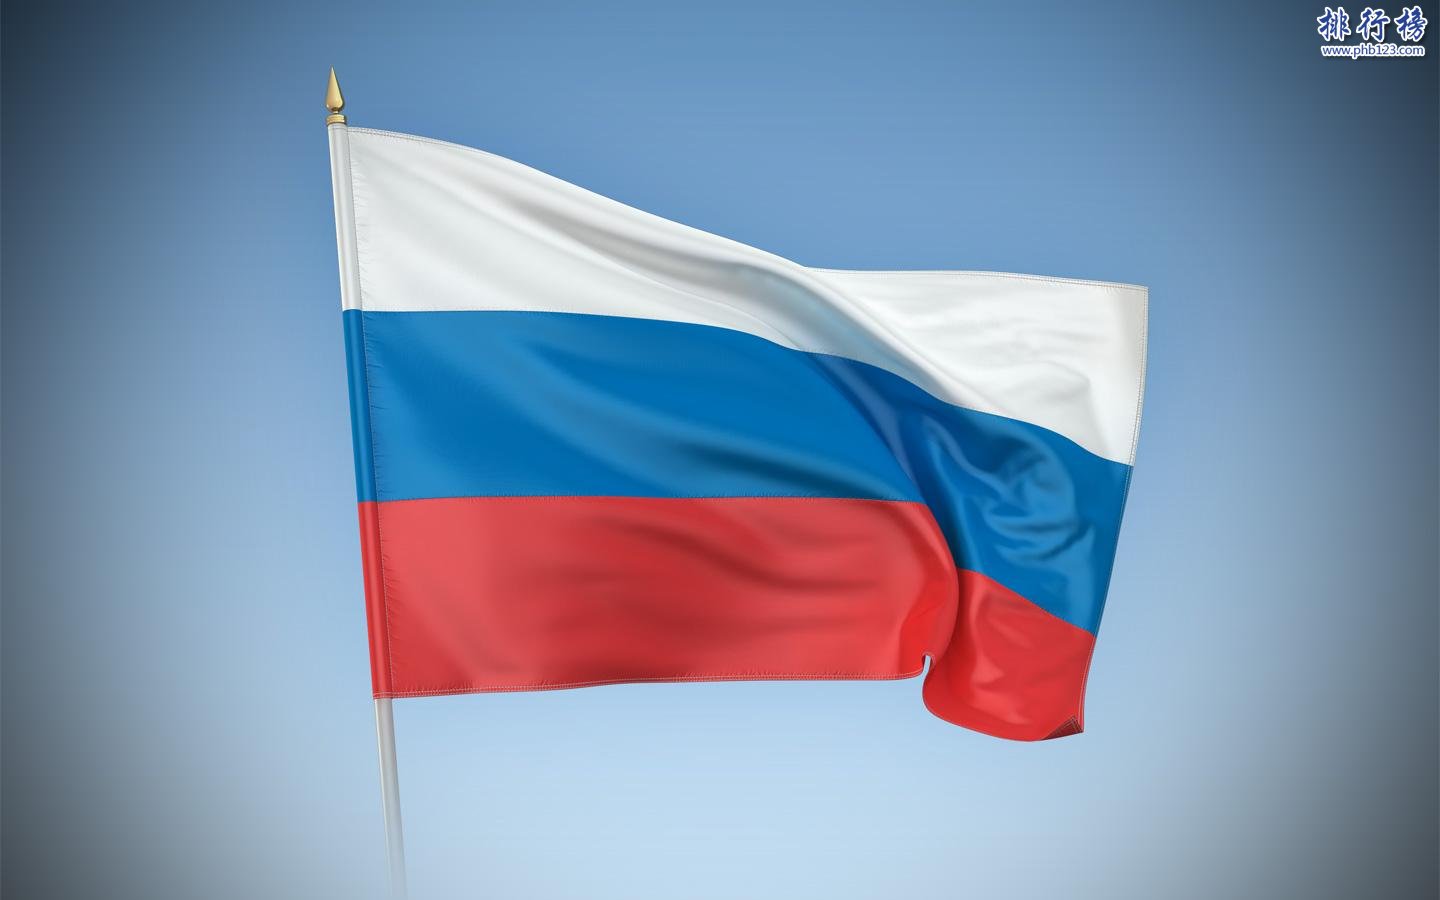 【俄羅斯國人口2018總人數】俄羅斯國人口數量2018|俄羅斯國人口世界排名 